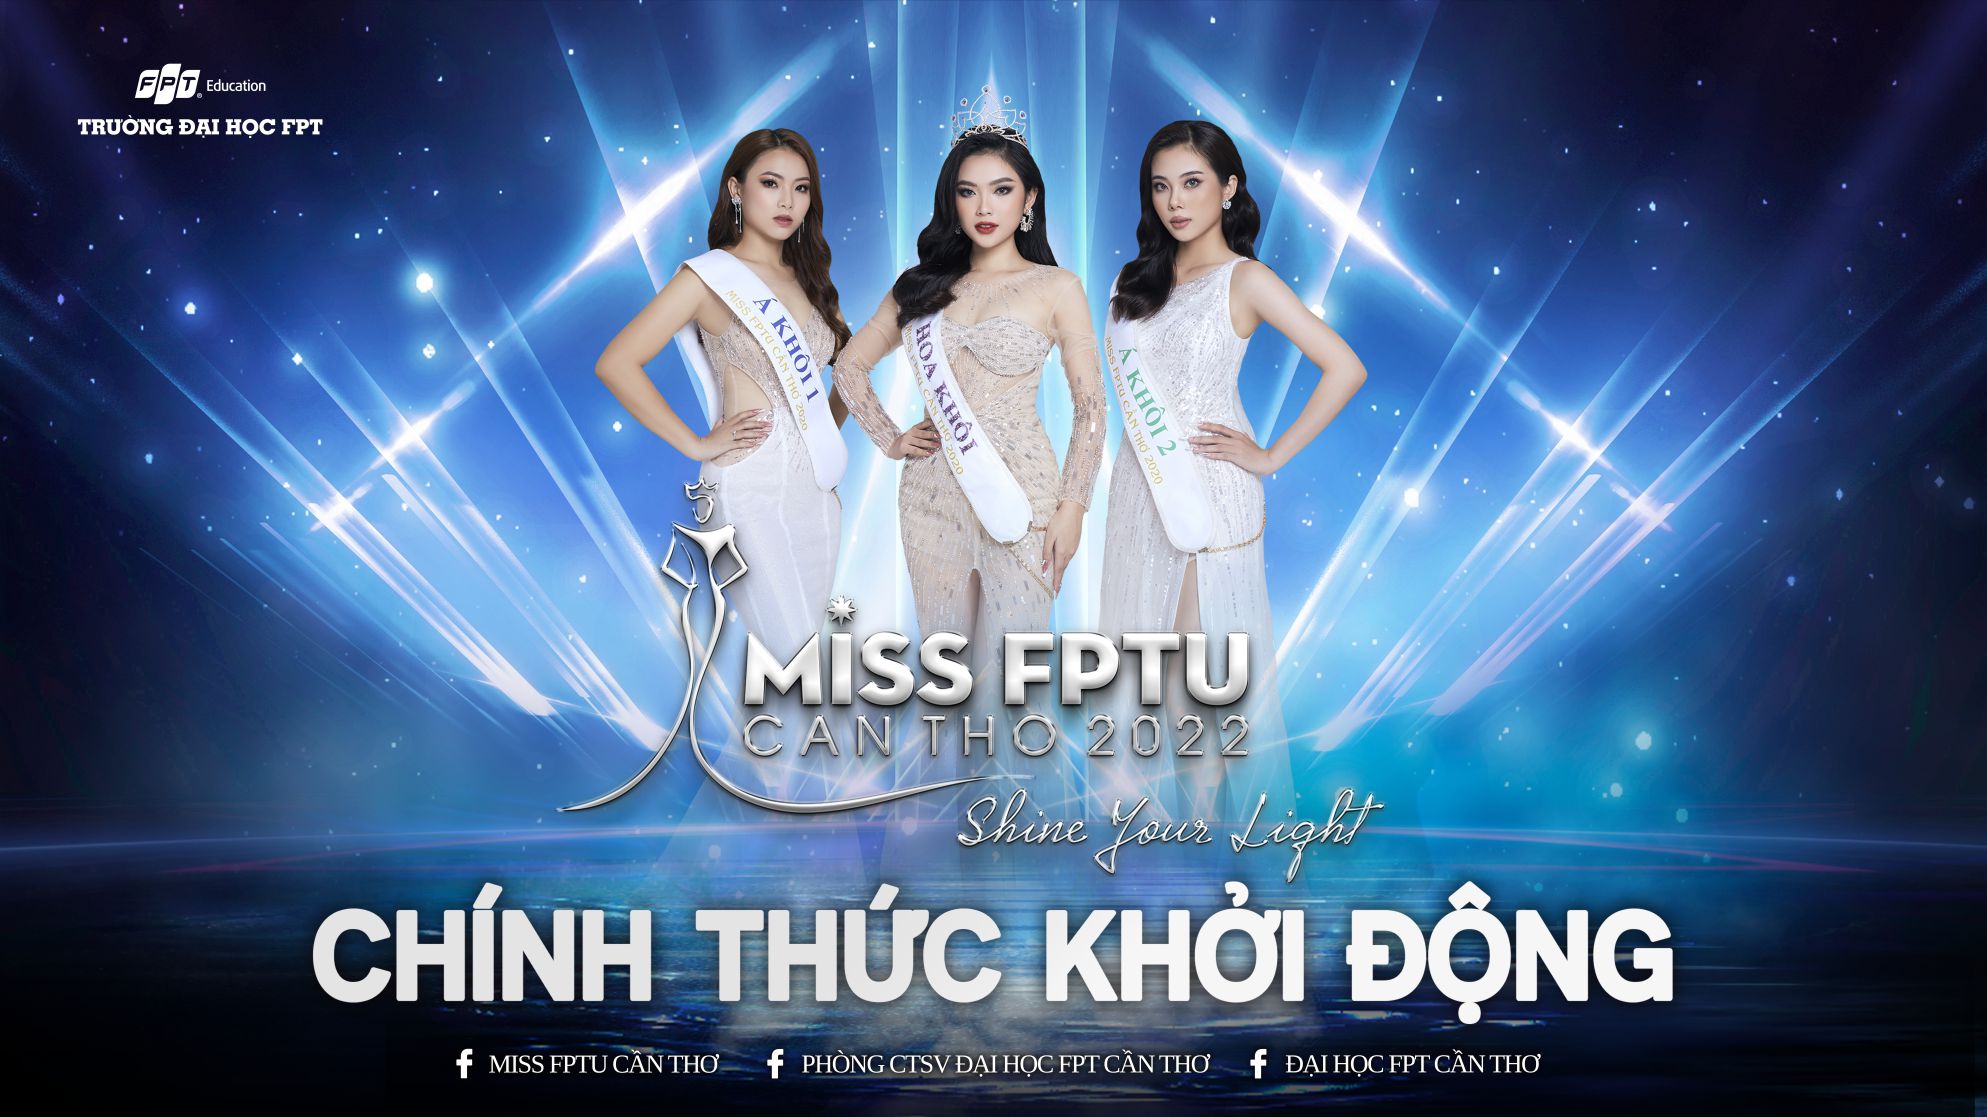 Chính thức khởi động cuộc thi Miss FPTU Cần Thơ 2022 - Shine Your Light